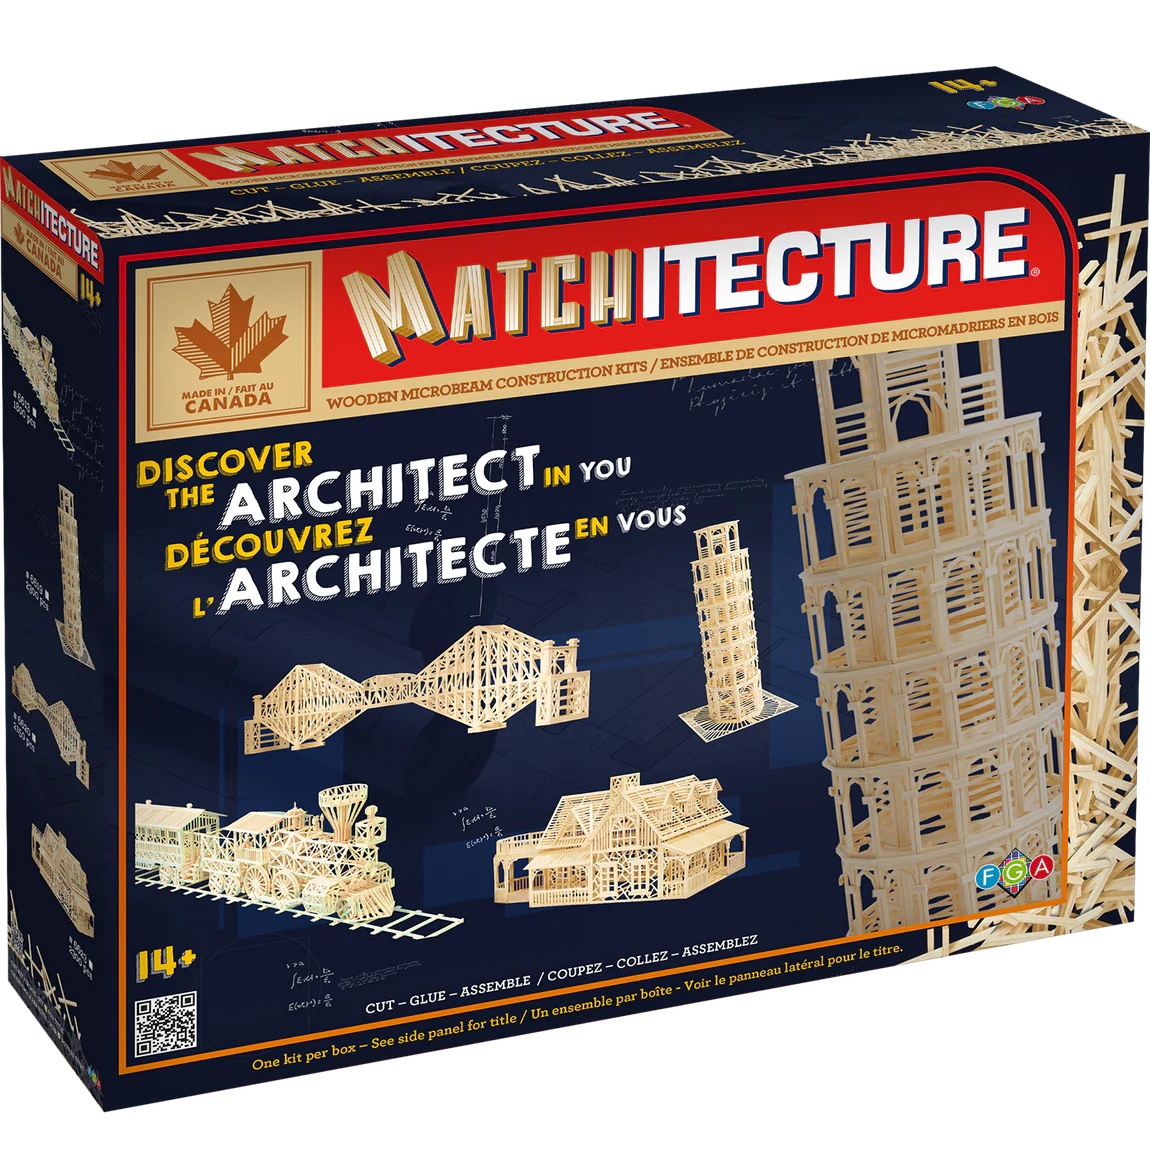 Tower of Pisa 6619 - Matchitecture